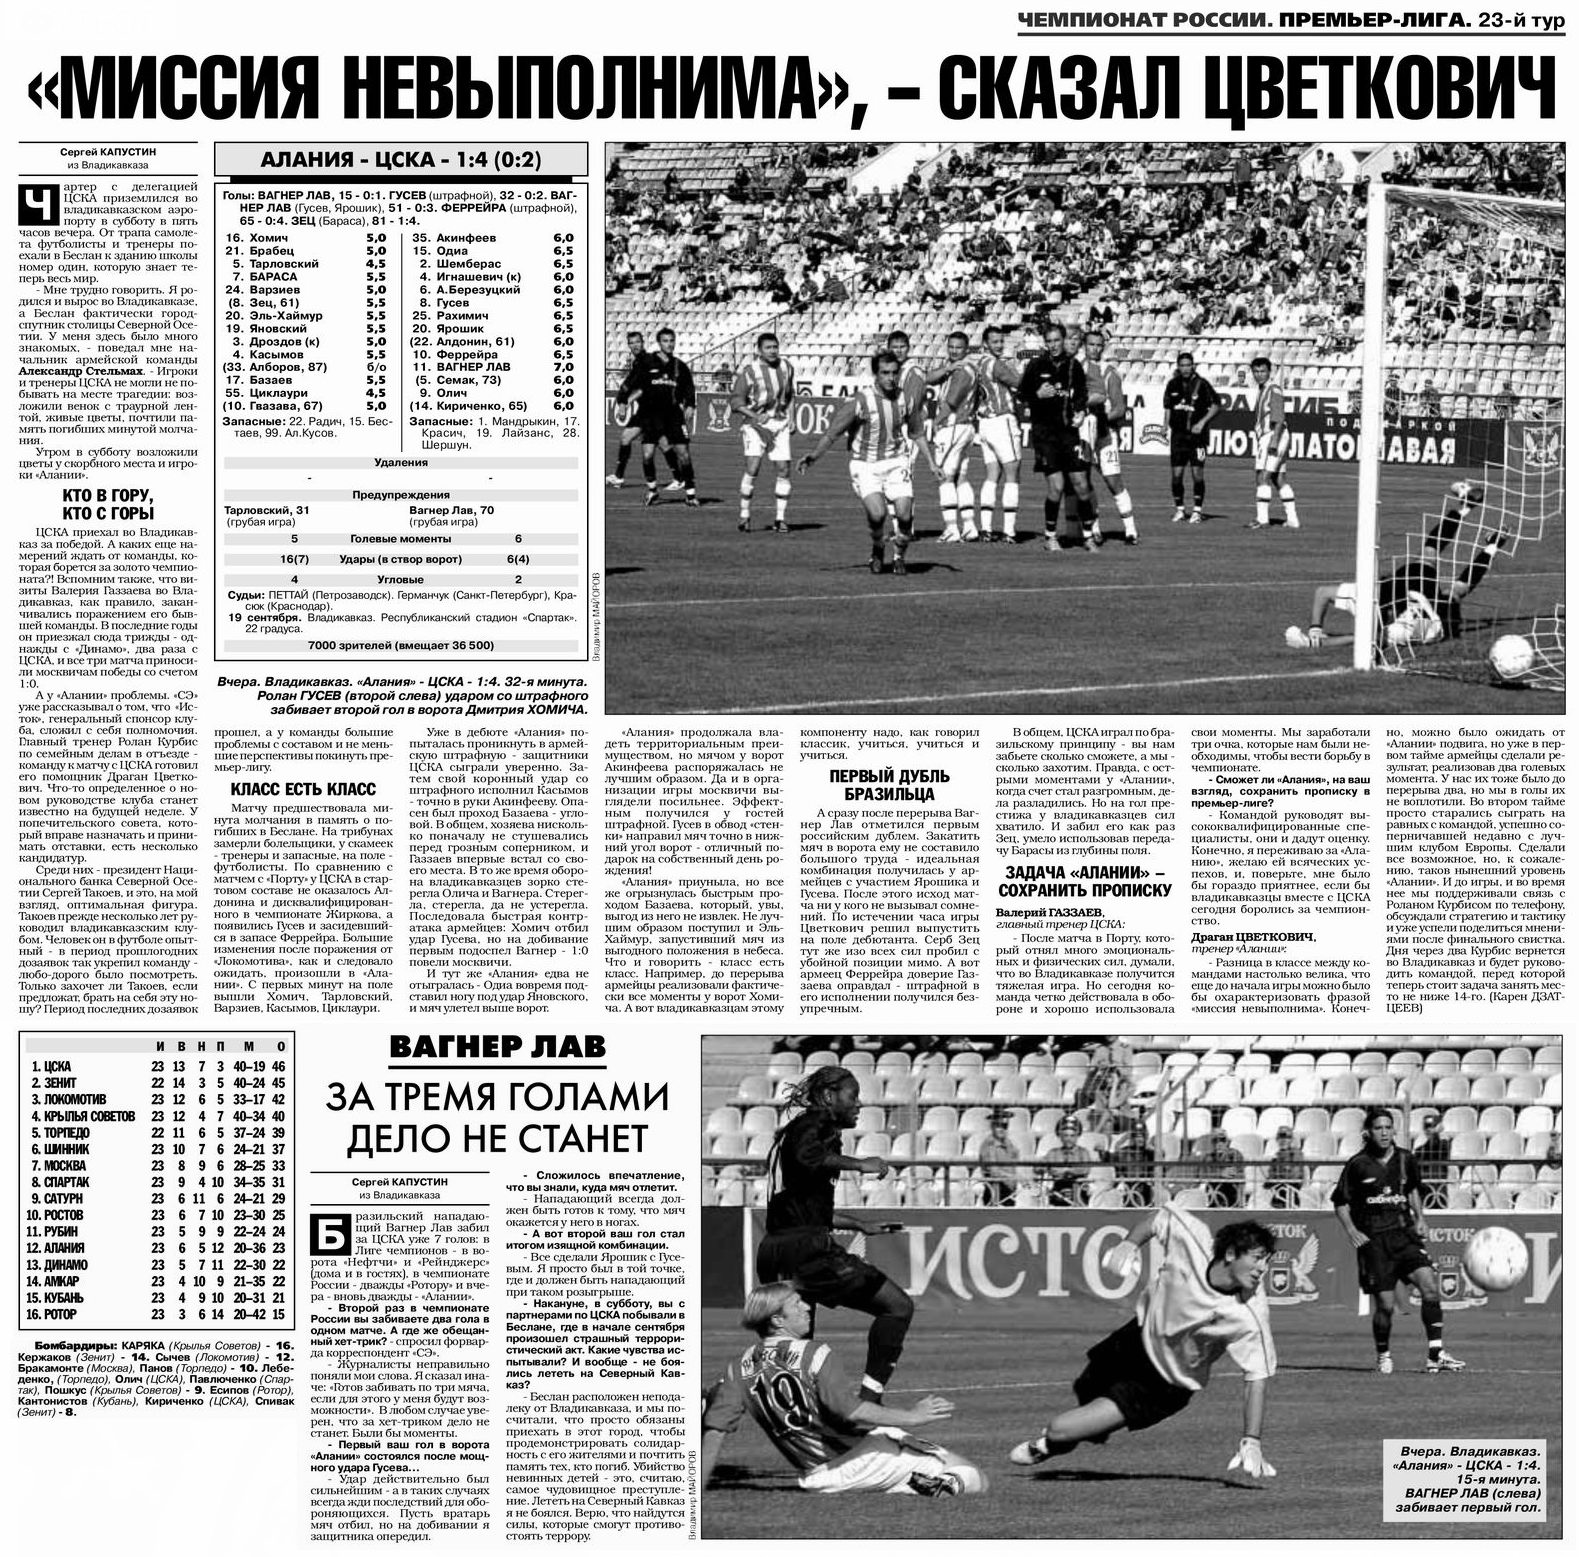 2004-09-19.Alanija-CSKA.1